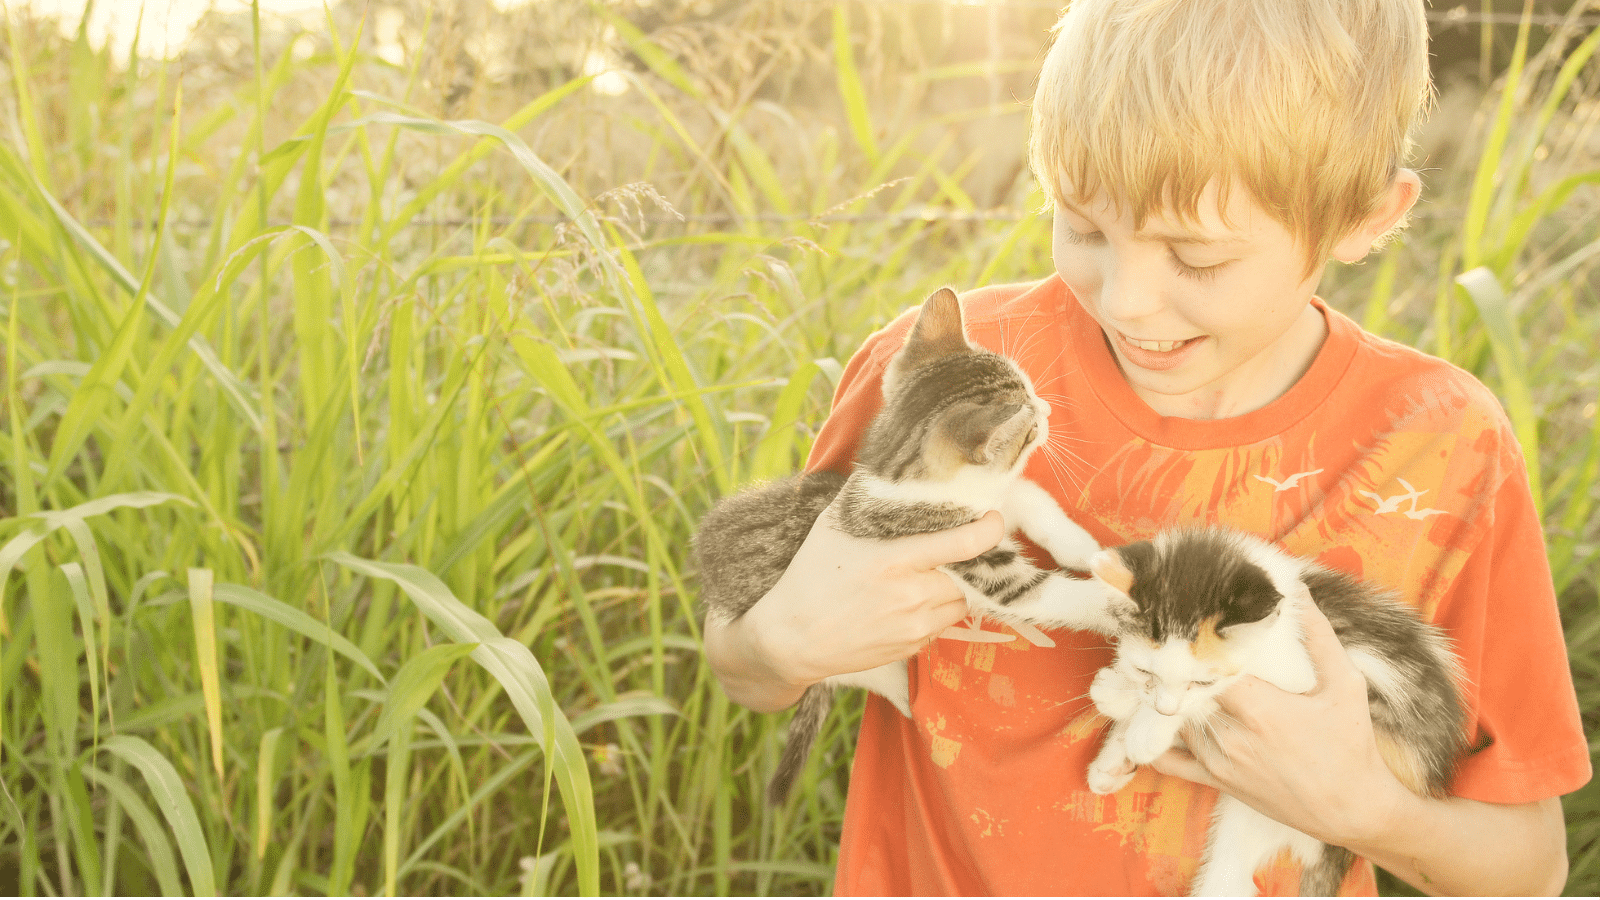 Boy holding kittens